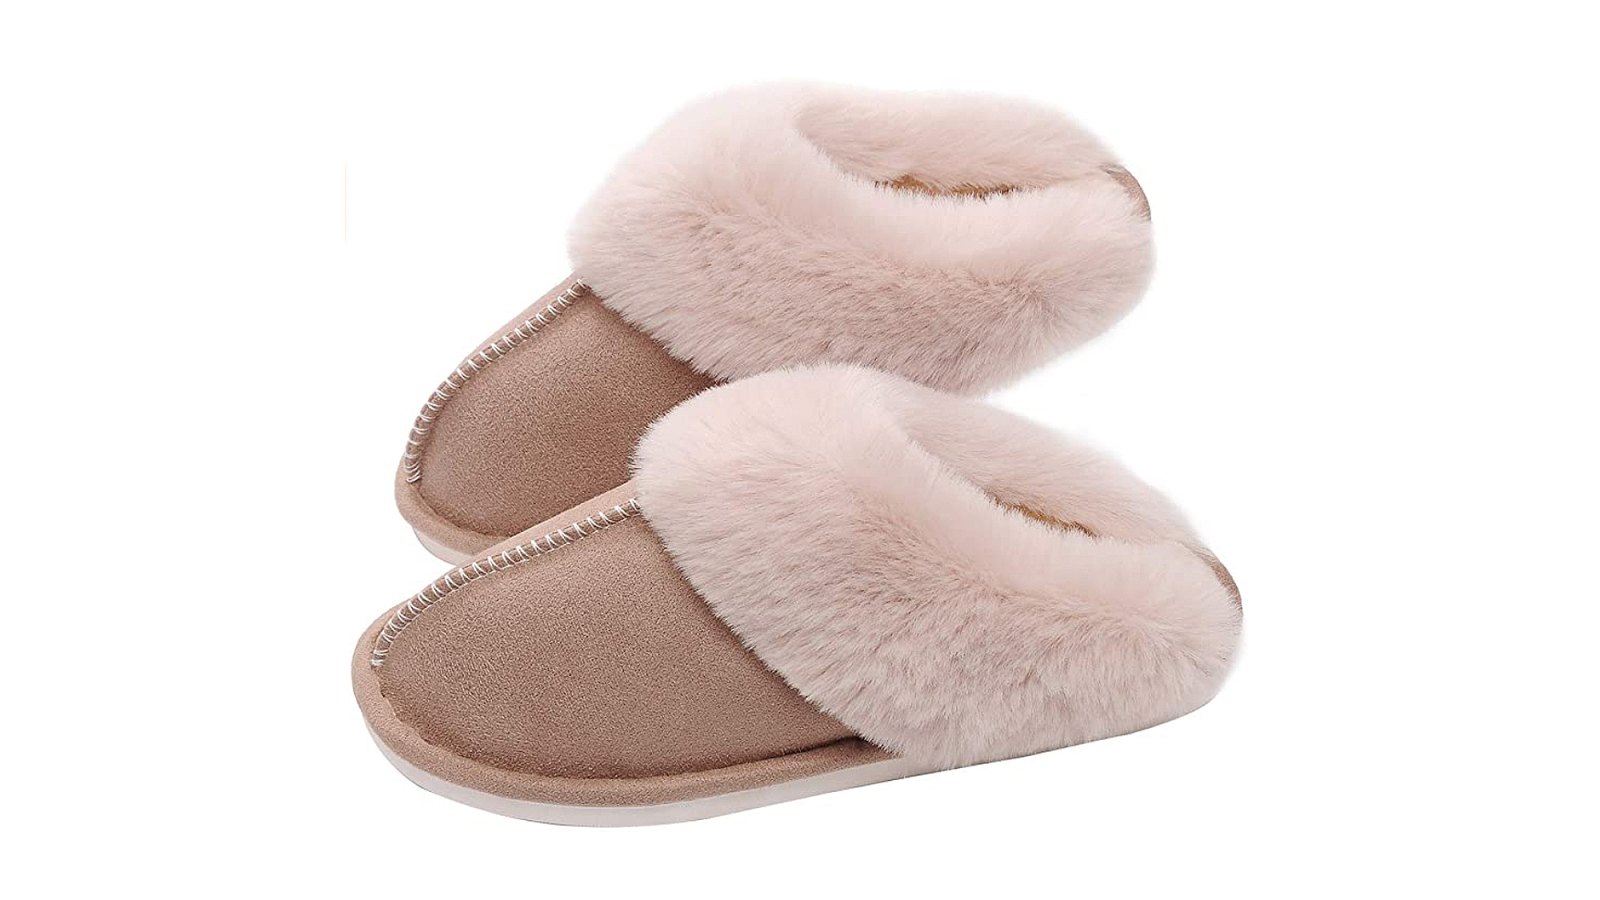 SOSUSHOE Women's Memory Foam Fluffy Fur Soft Slippers